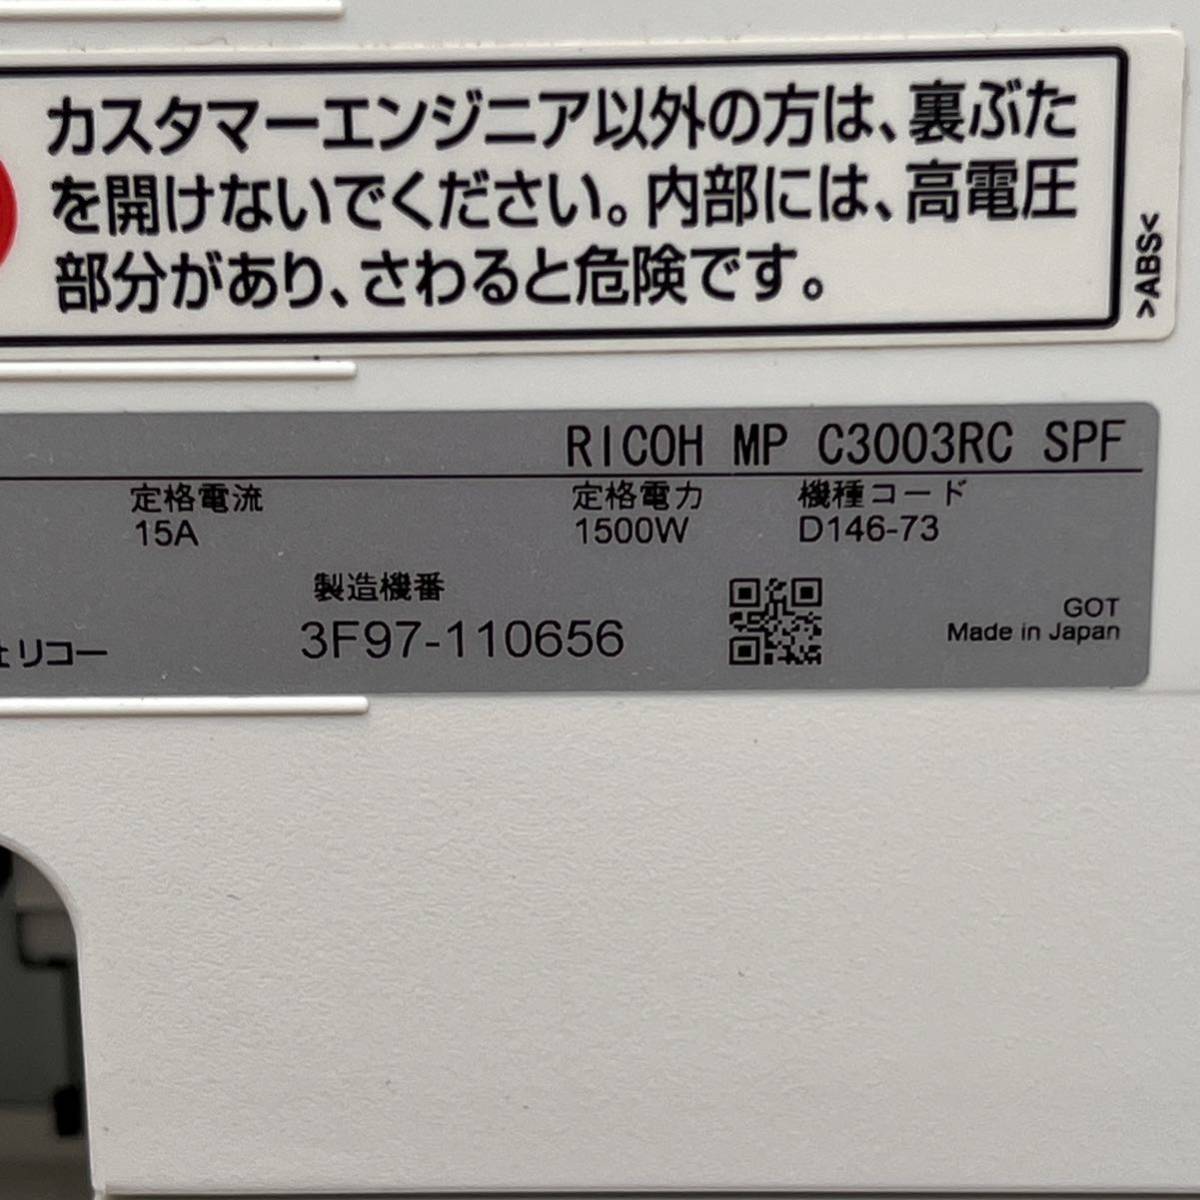 総印刷枚数72,886枚 RICOH リコー 複合機 コピー機 MP C3003RC SPF_画像10